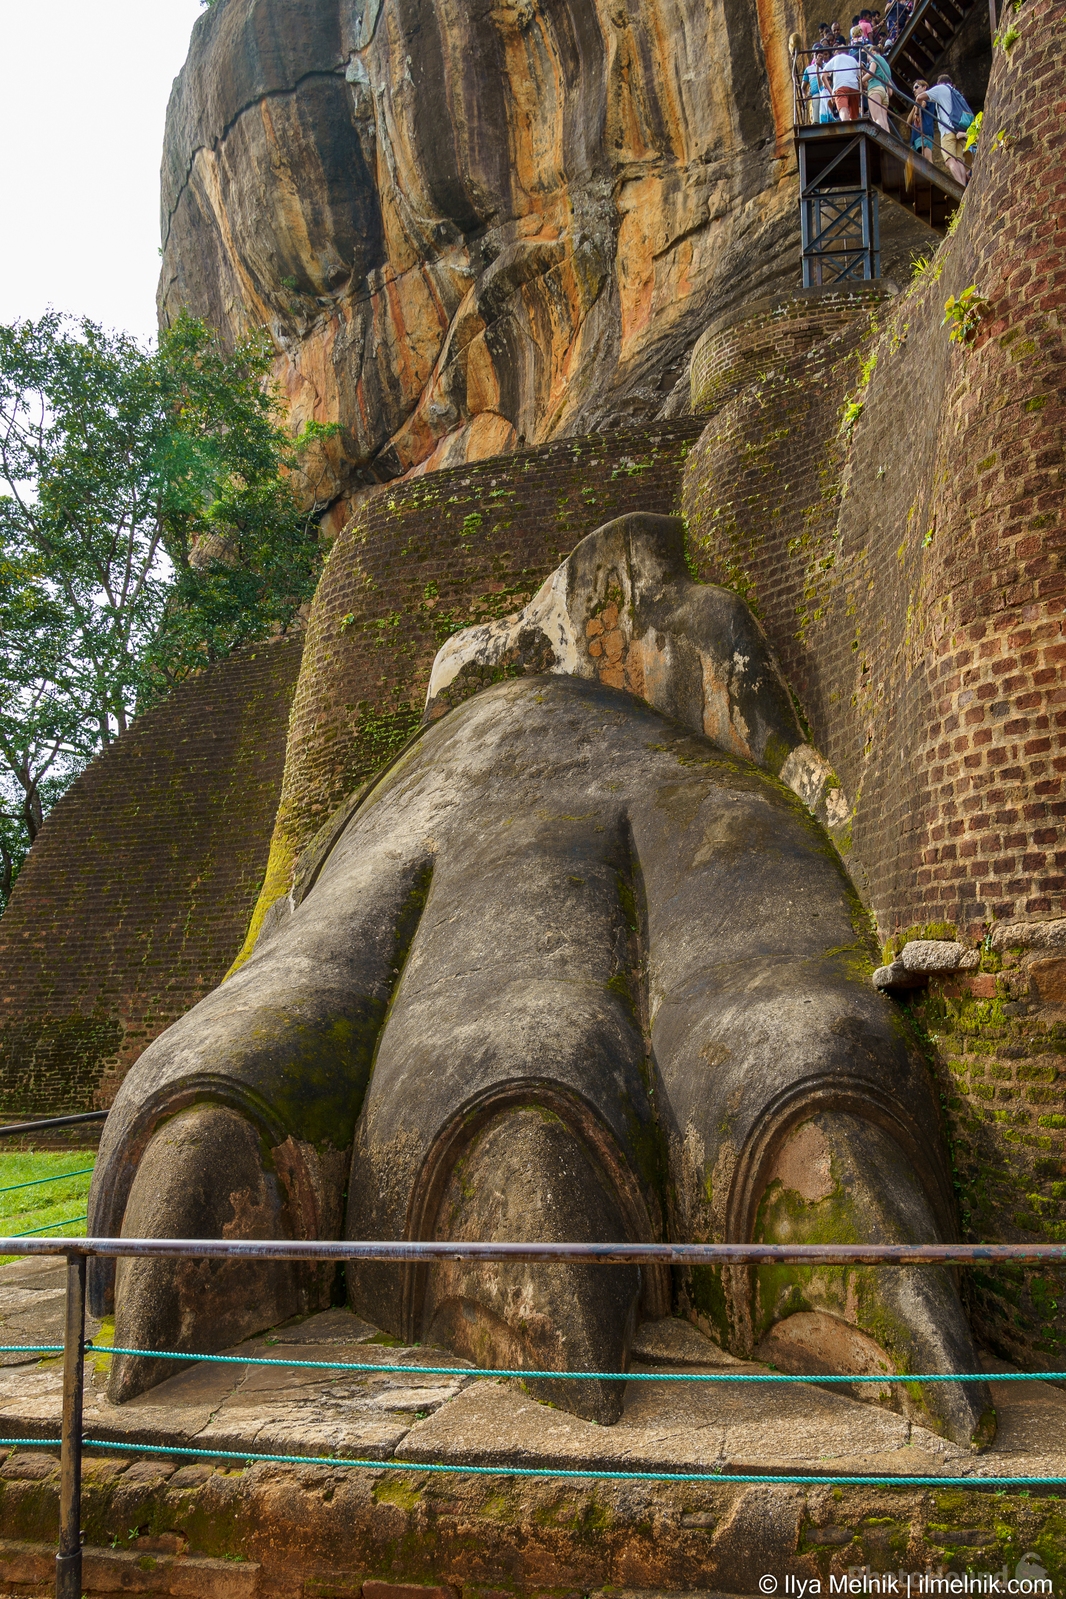 Image of Sigiriya Rock Fortress by Ilya Melnik